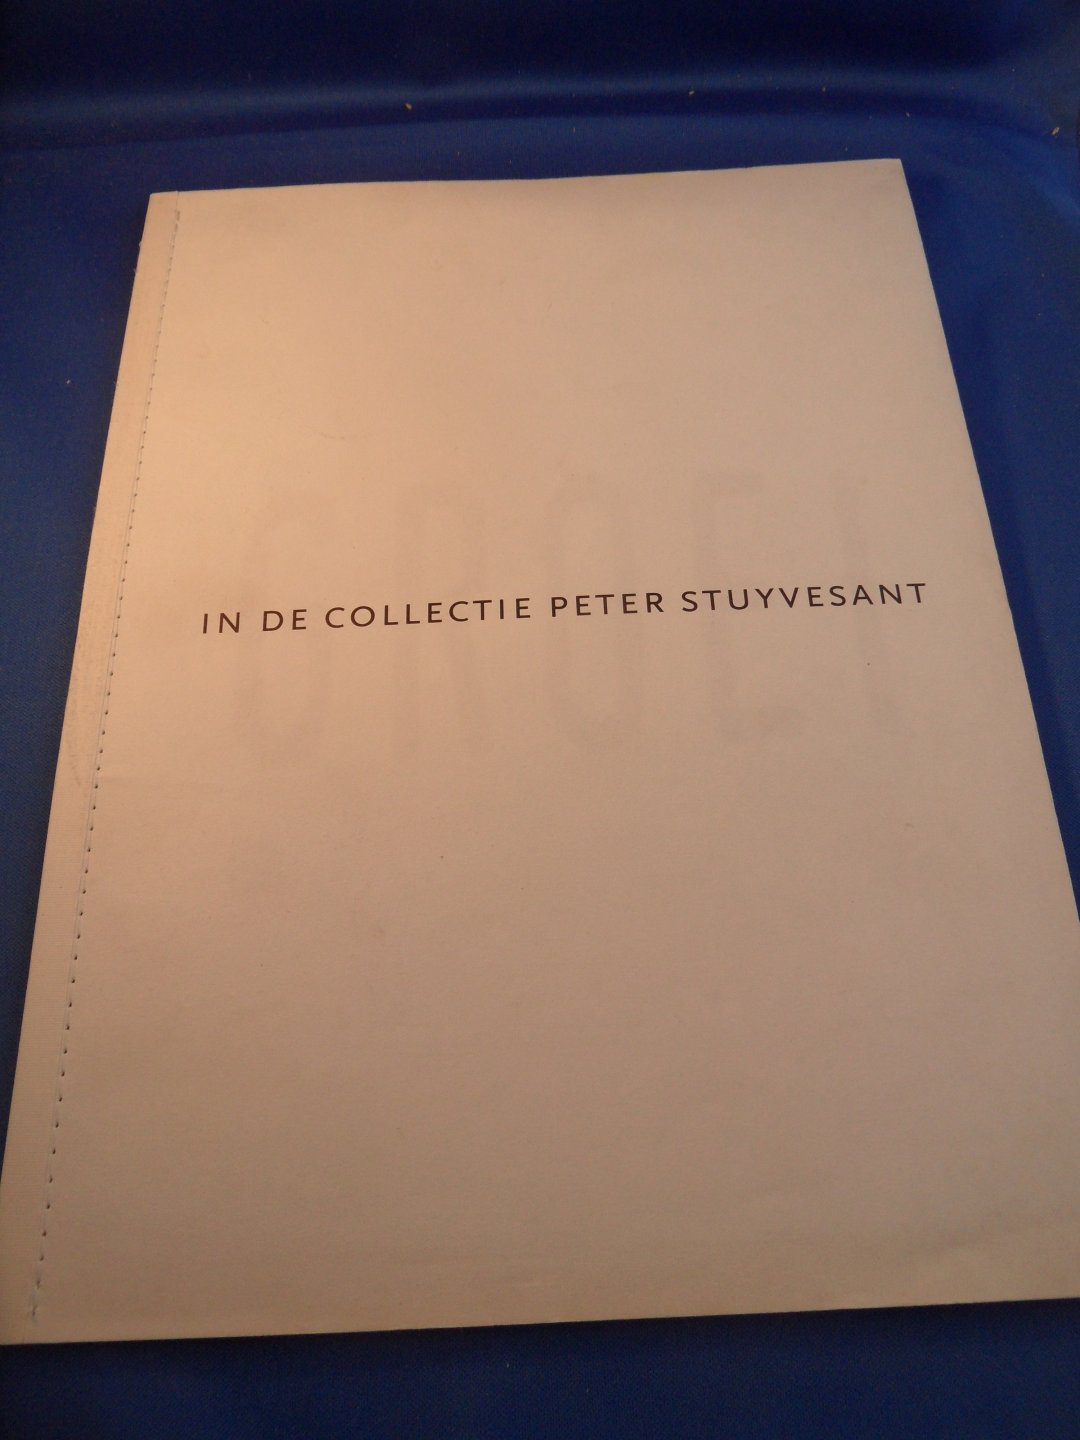 Vos, J.G. de - Groei in de collectie Peter Stuyvesant